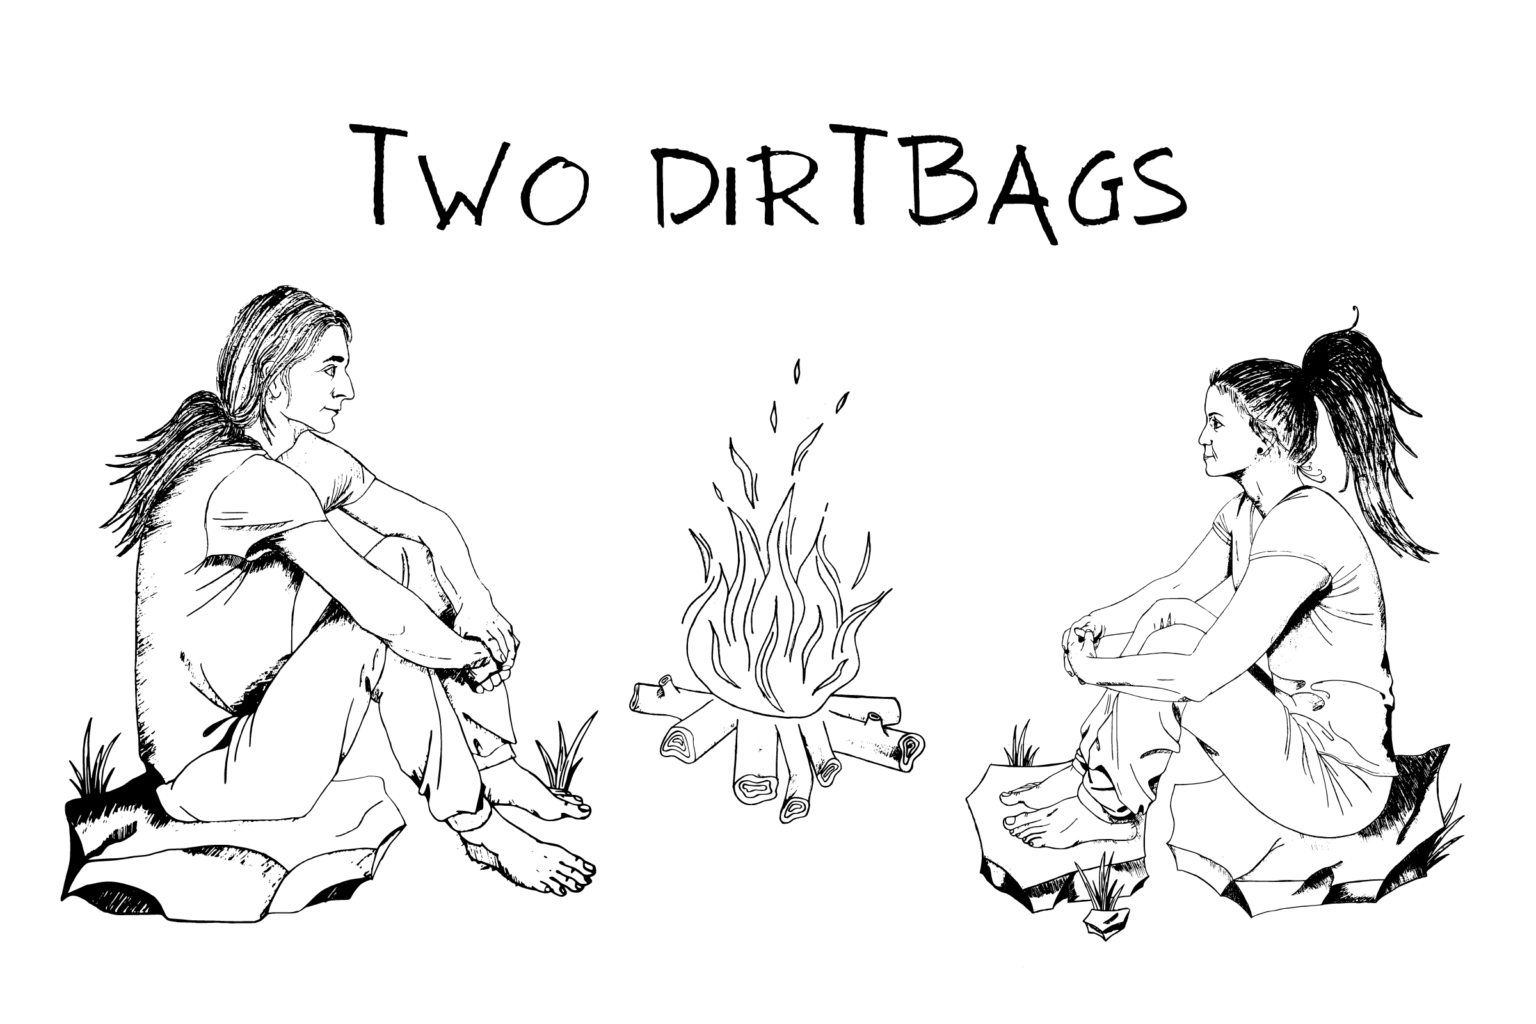 TwoDirtbags.com